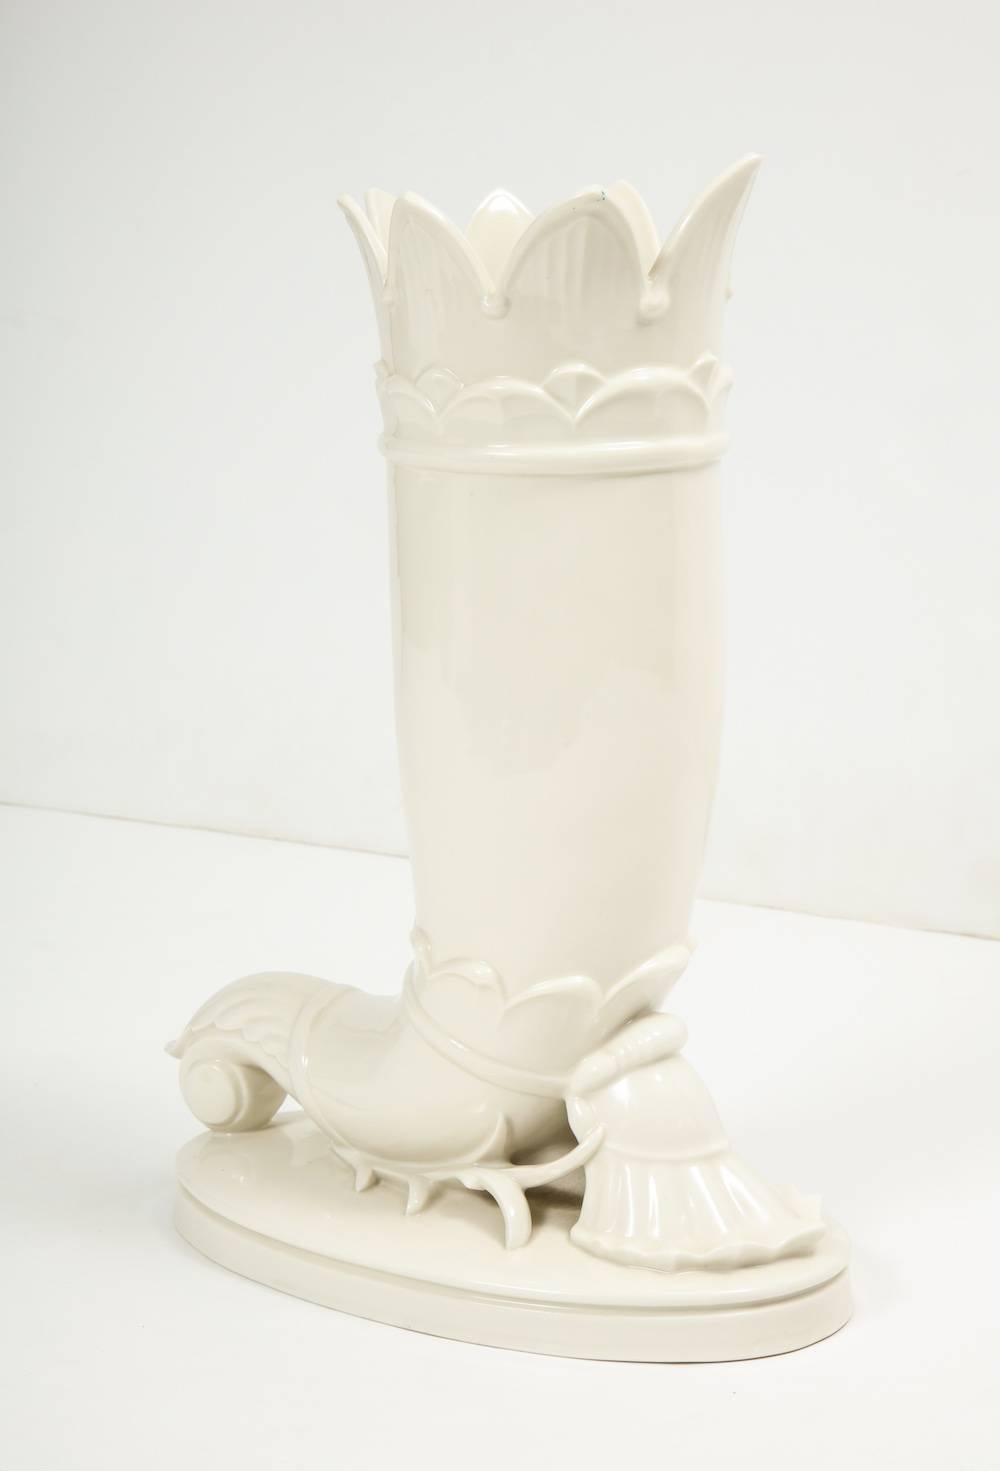 Vase en porcelaine ancienne de Schwarzburger Werkstätten.
Vase en porcelaine de bonne facture avec motif décoratif classique et base basse sur piédestal. 
Signature du fabricant sur la face inférieure.